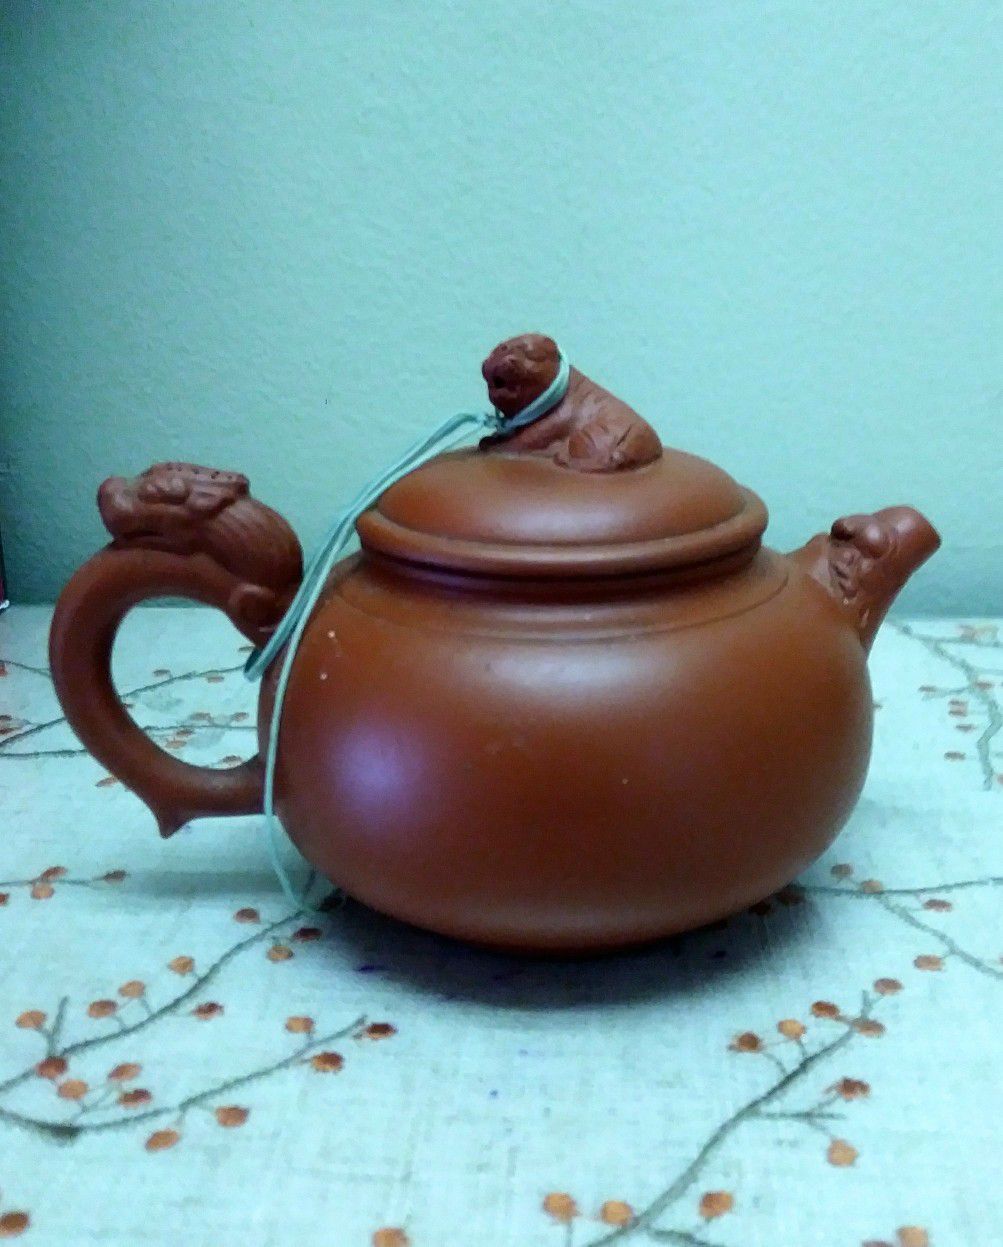 Cute litte decorative tea pot